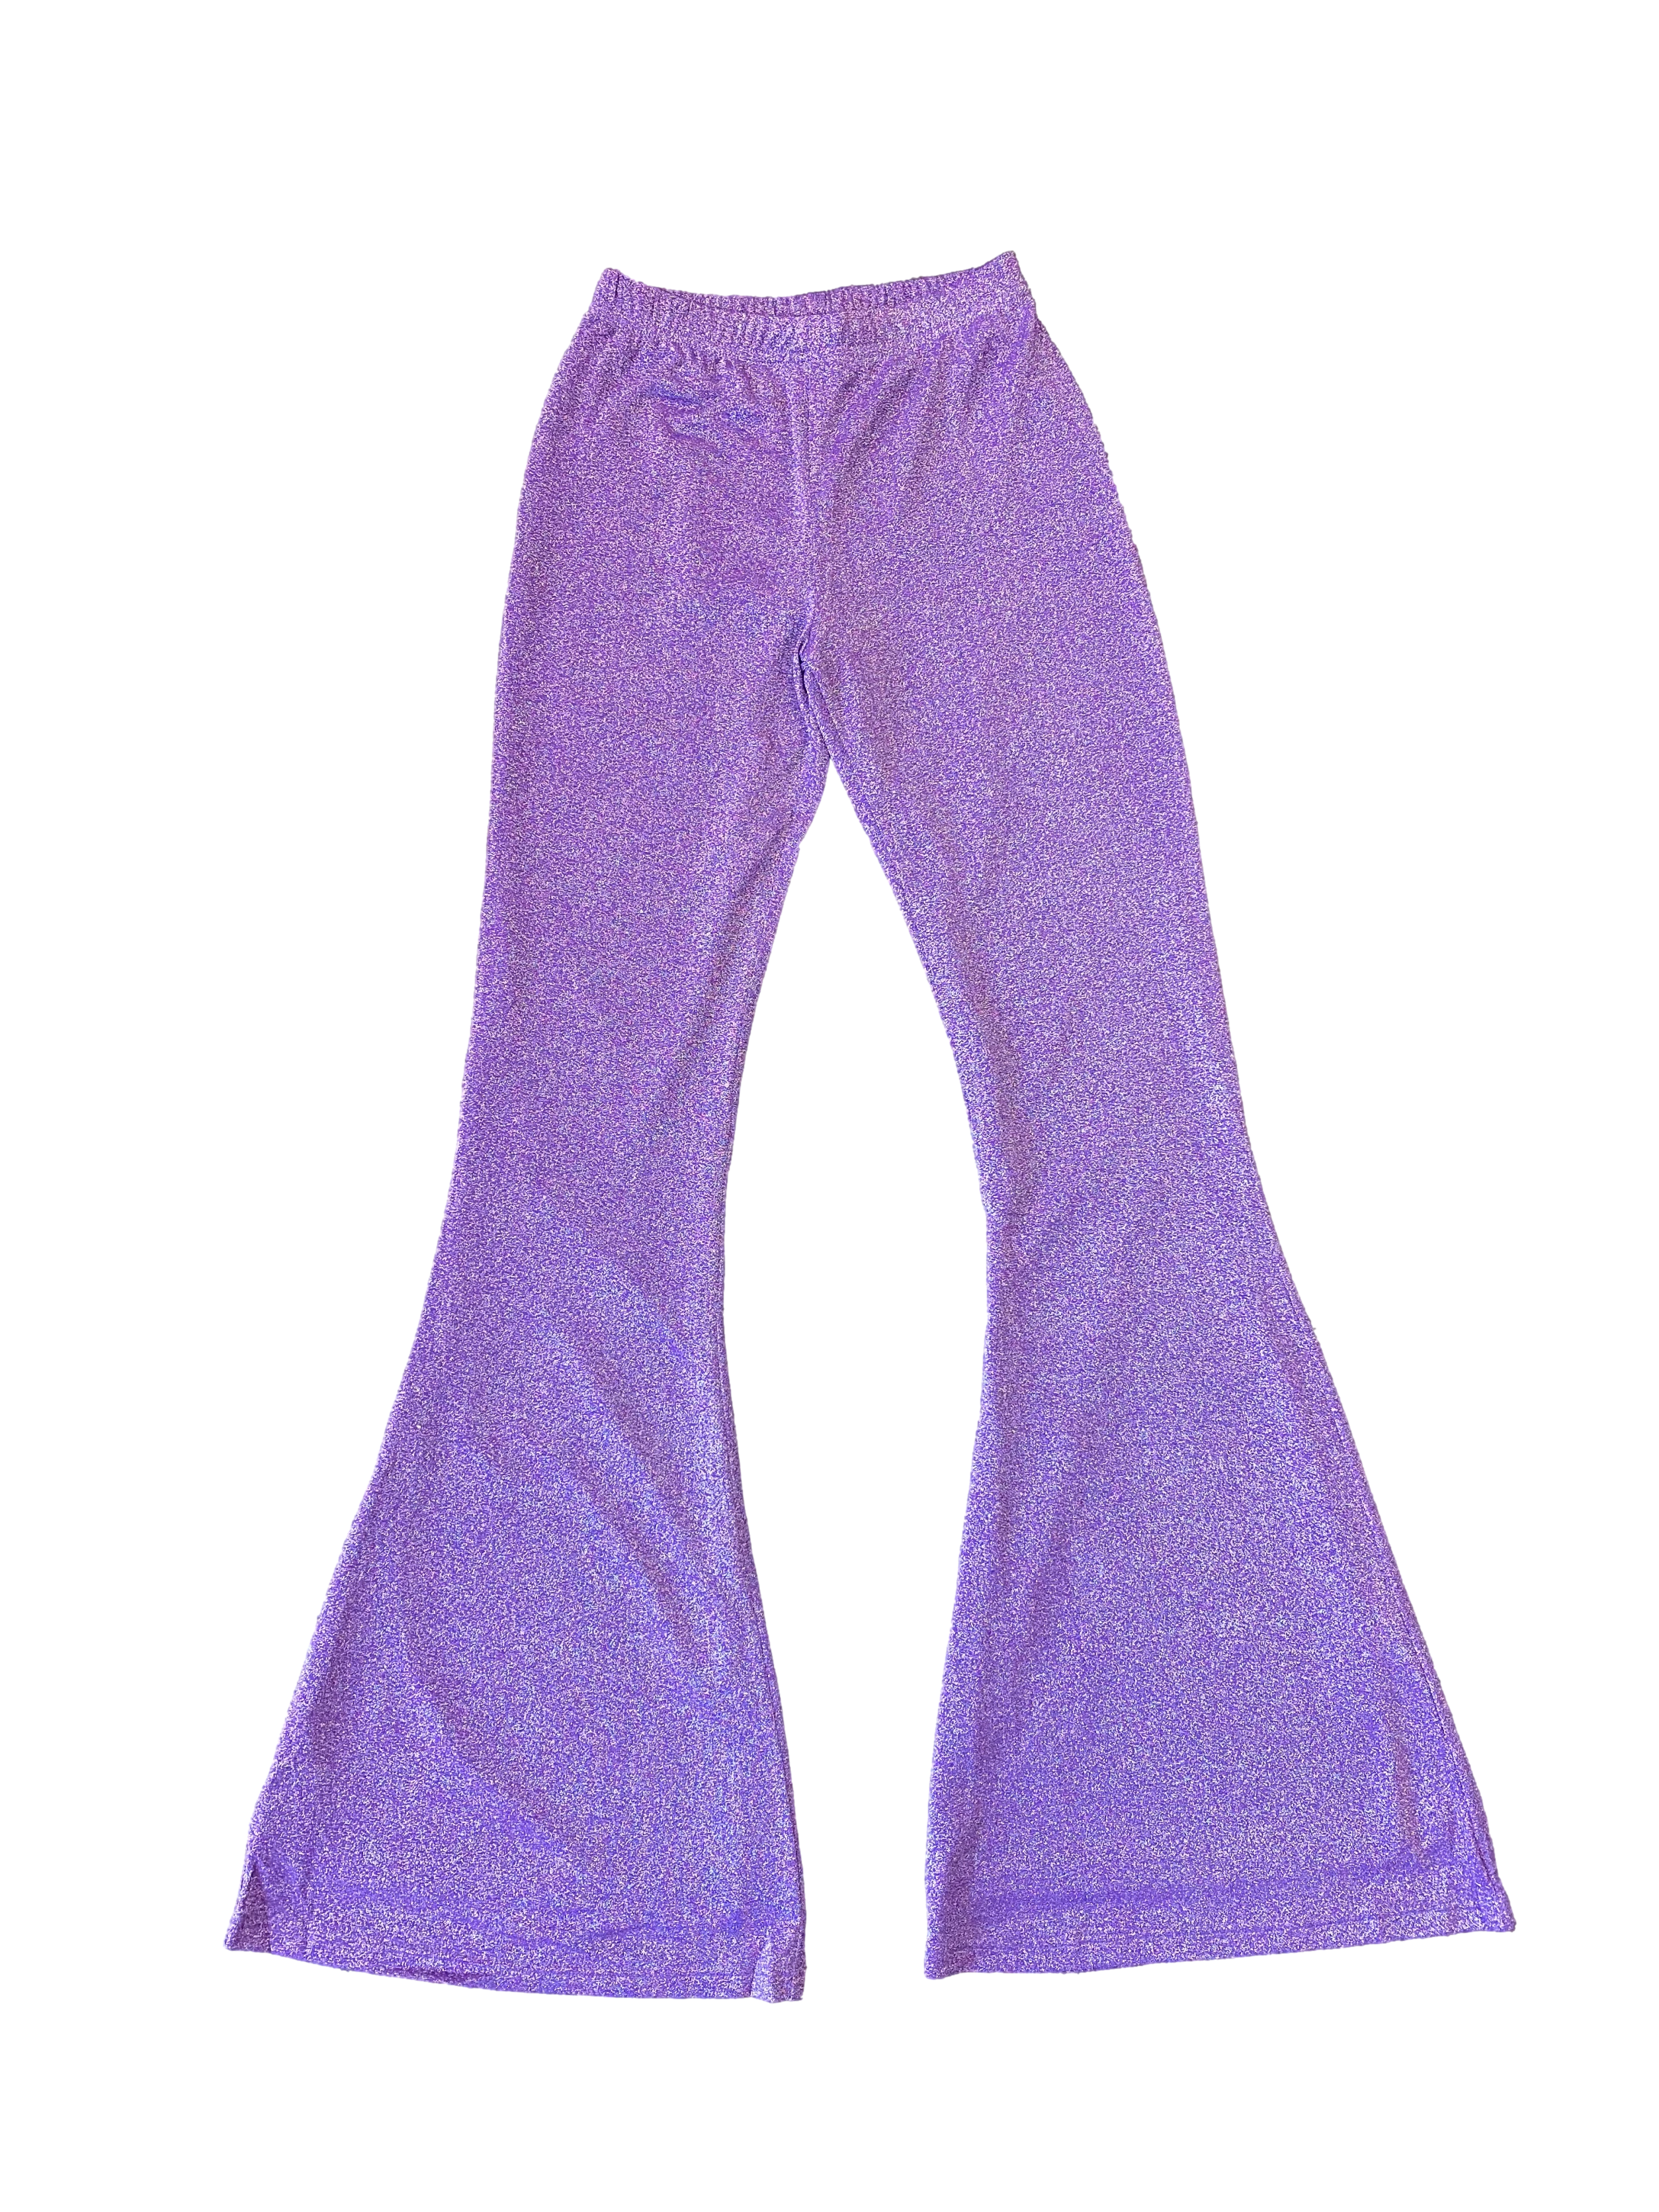 P 630 Royal Blue & Purple Pants S M ONLY